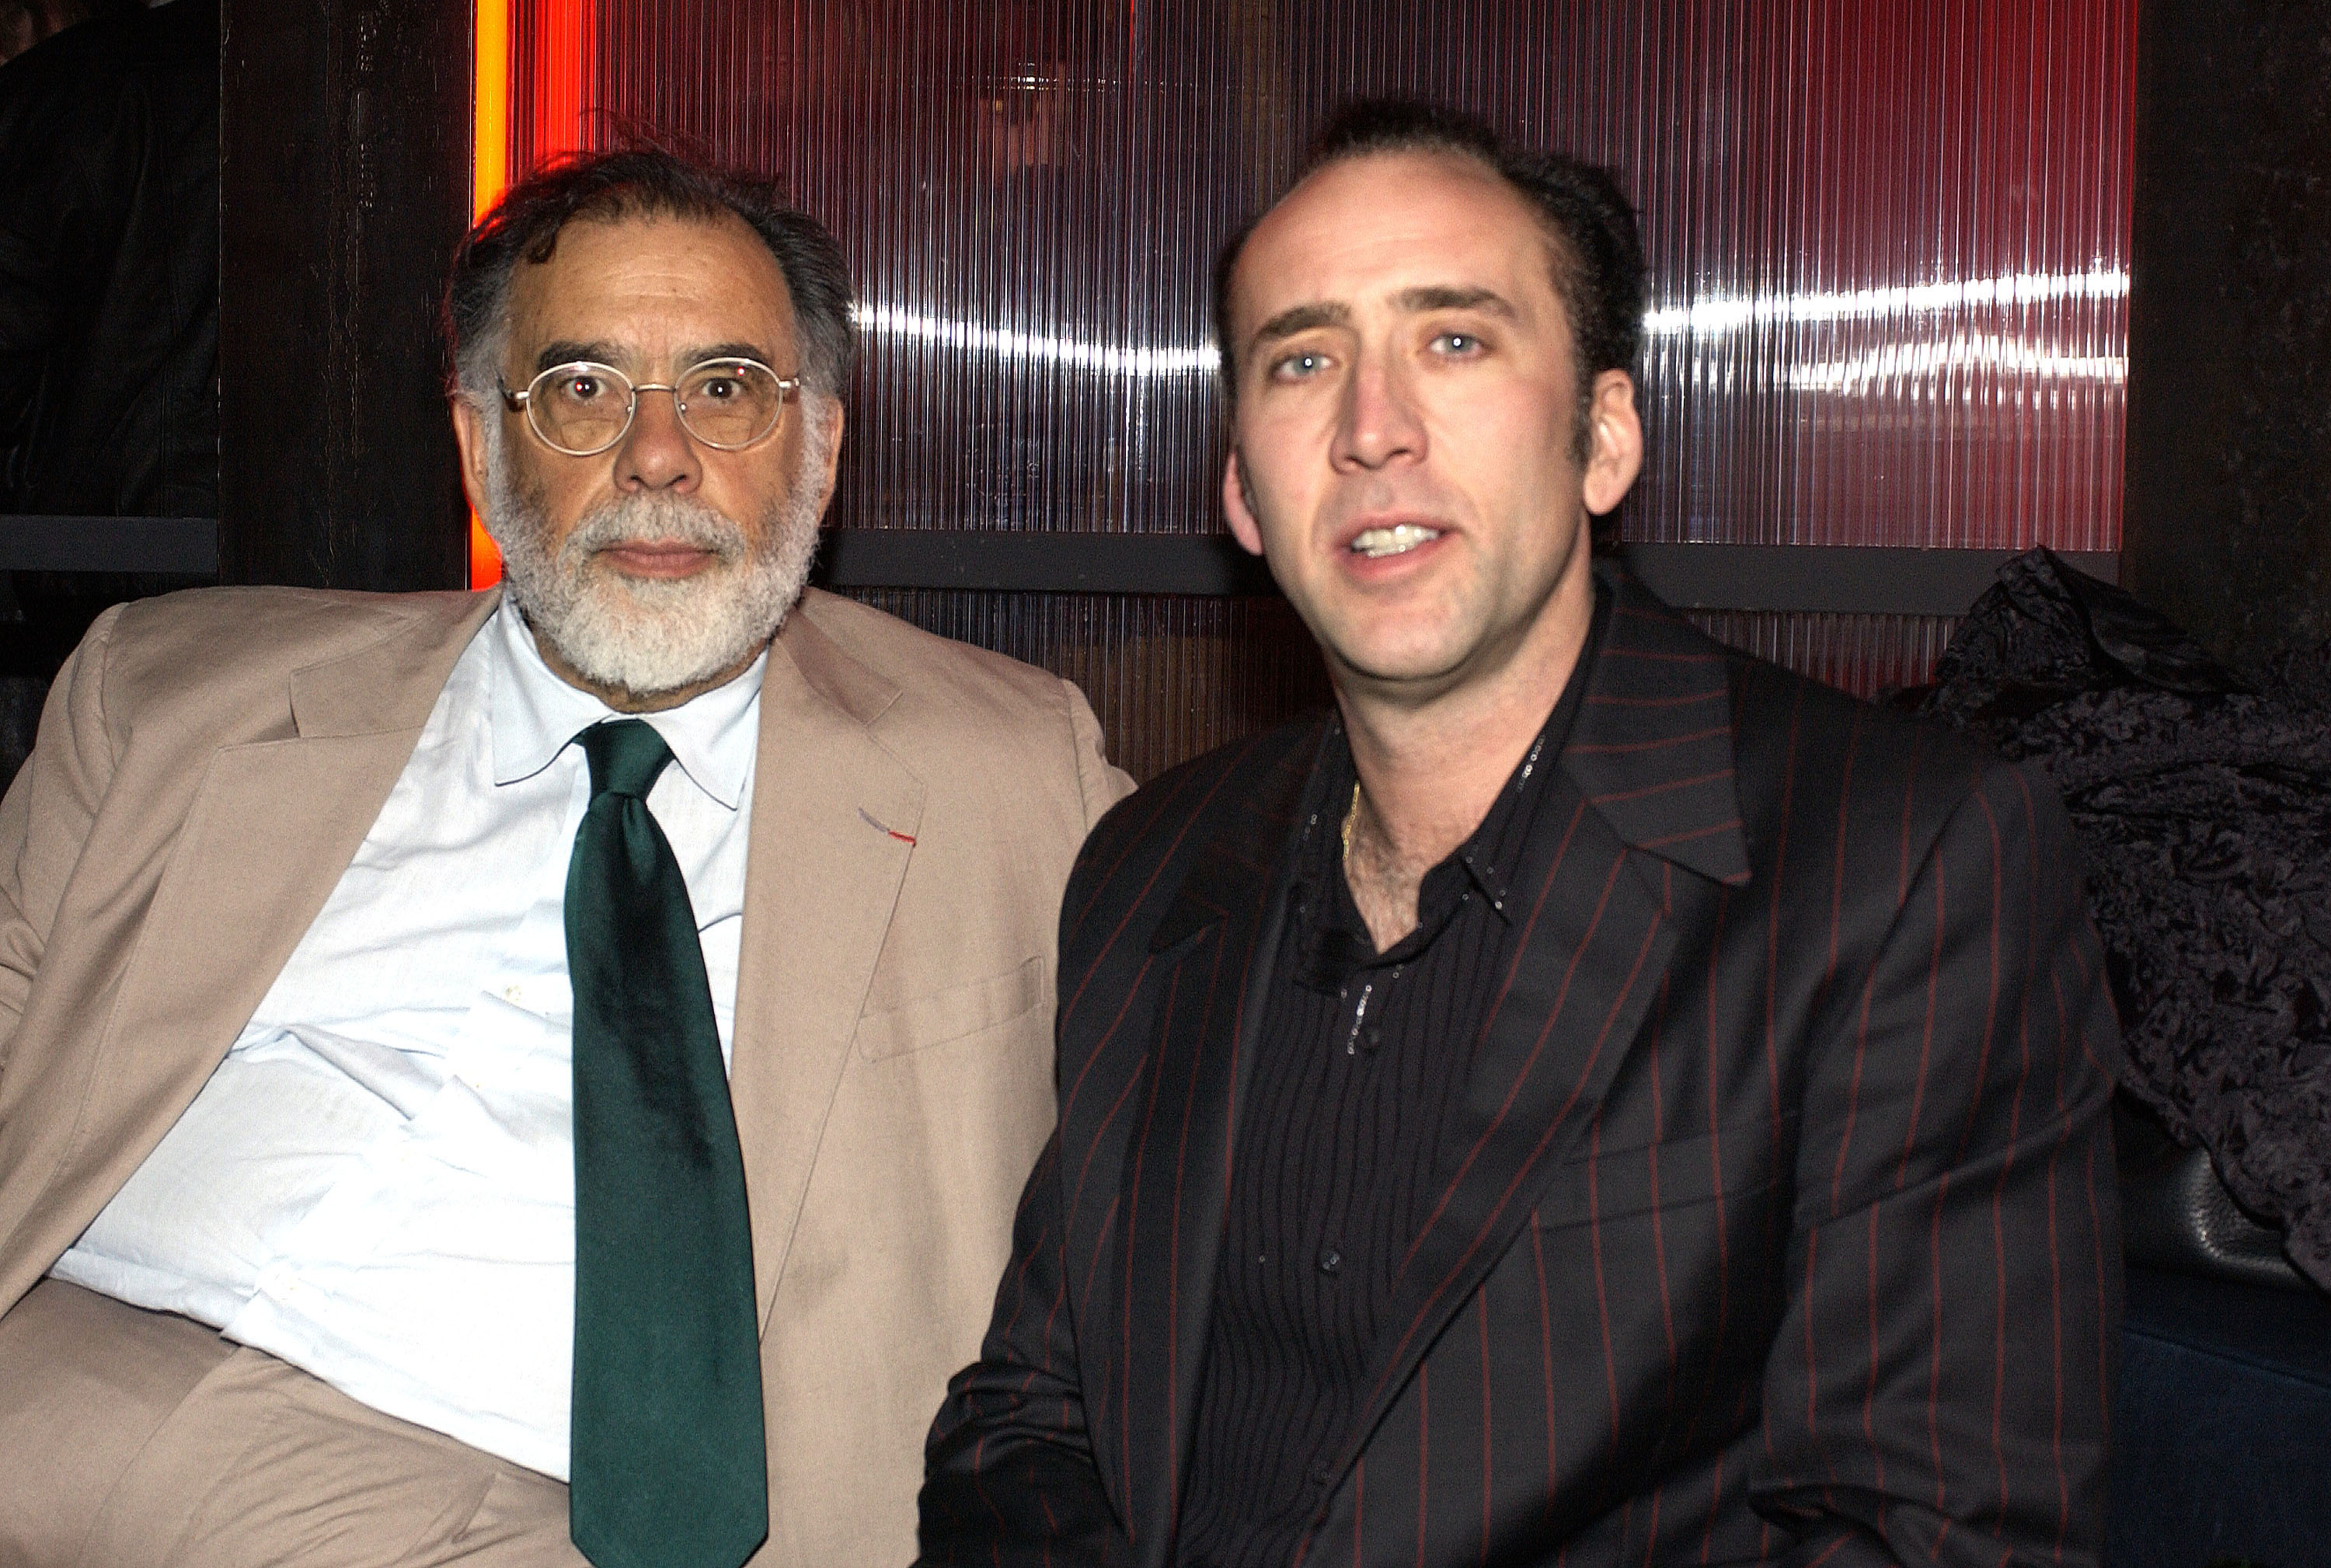 Francis Ford Coppola y Nicolas Cage en una fiesta el 17 de marzo de 2003, en Hollywood, California. | Fuente: Getty Images